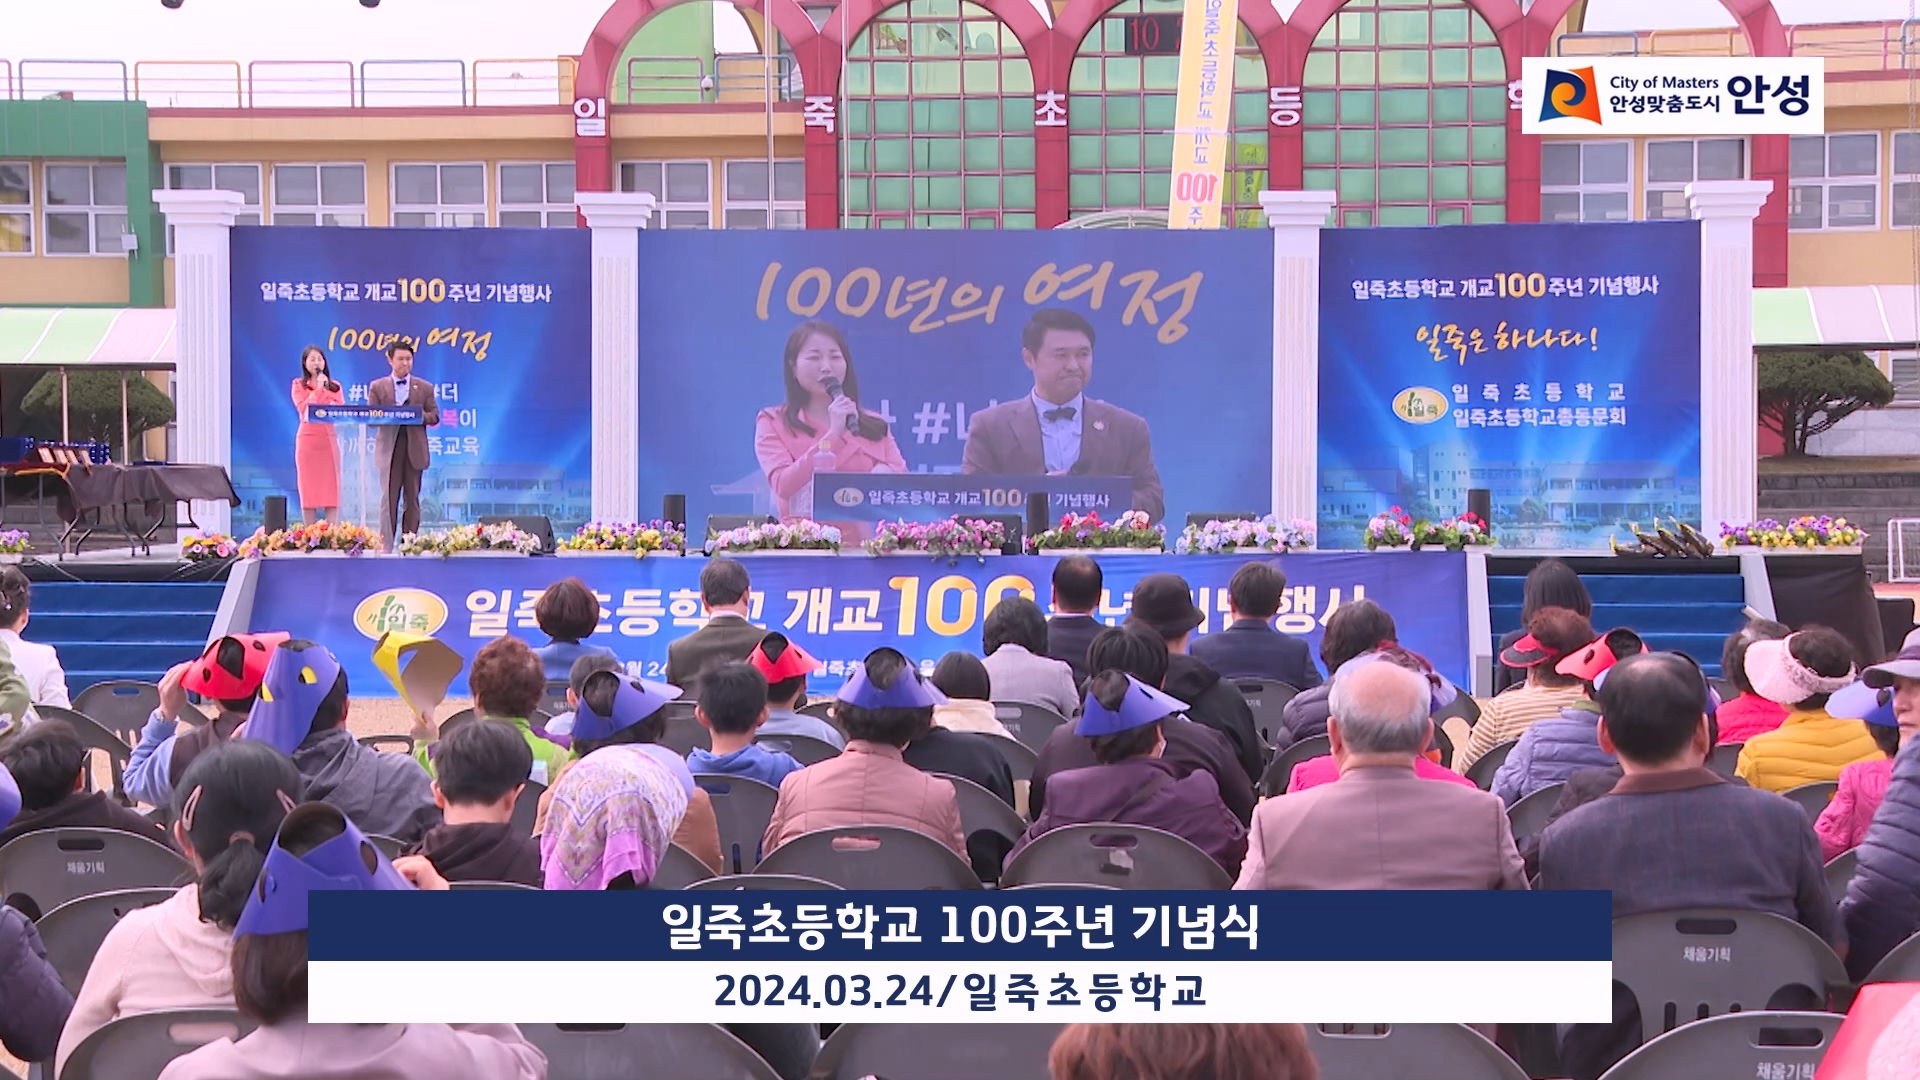 일죽초등학교 100주년 기념식